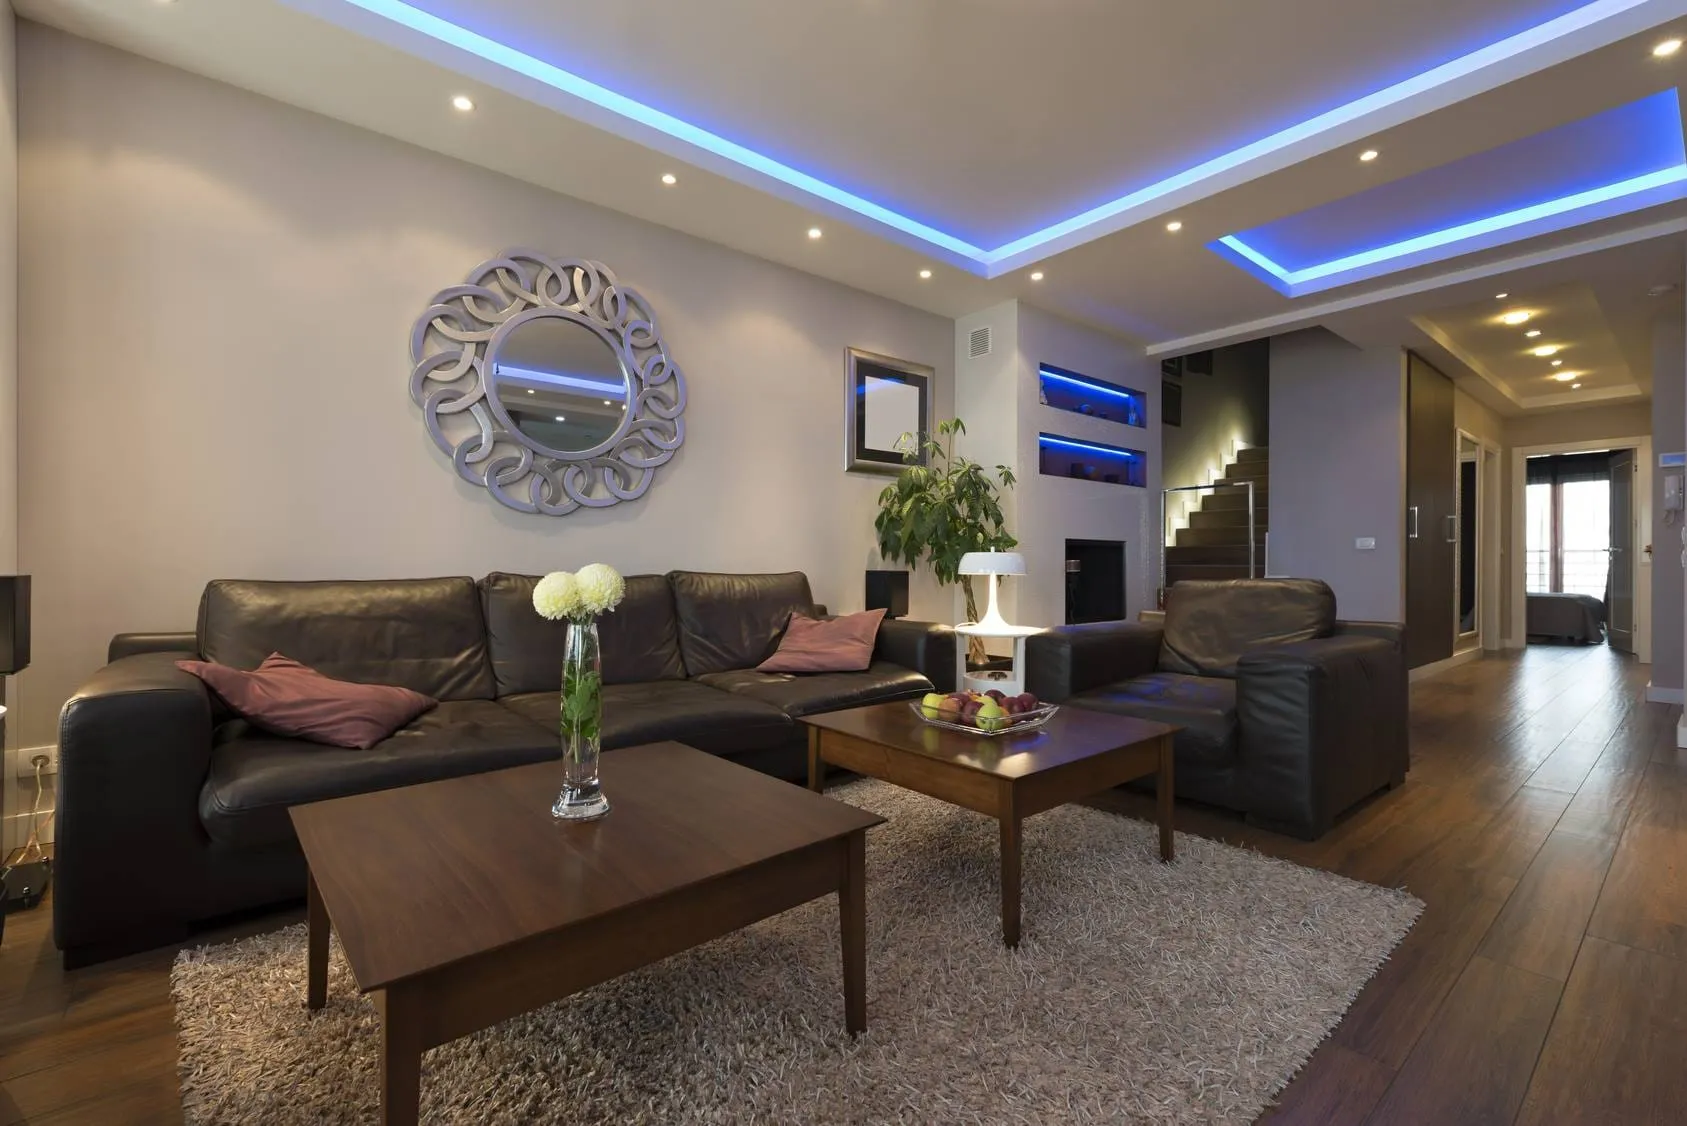 LED lights in living room ceiling lighting